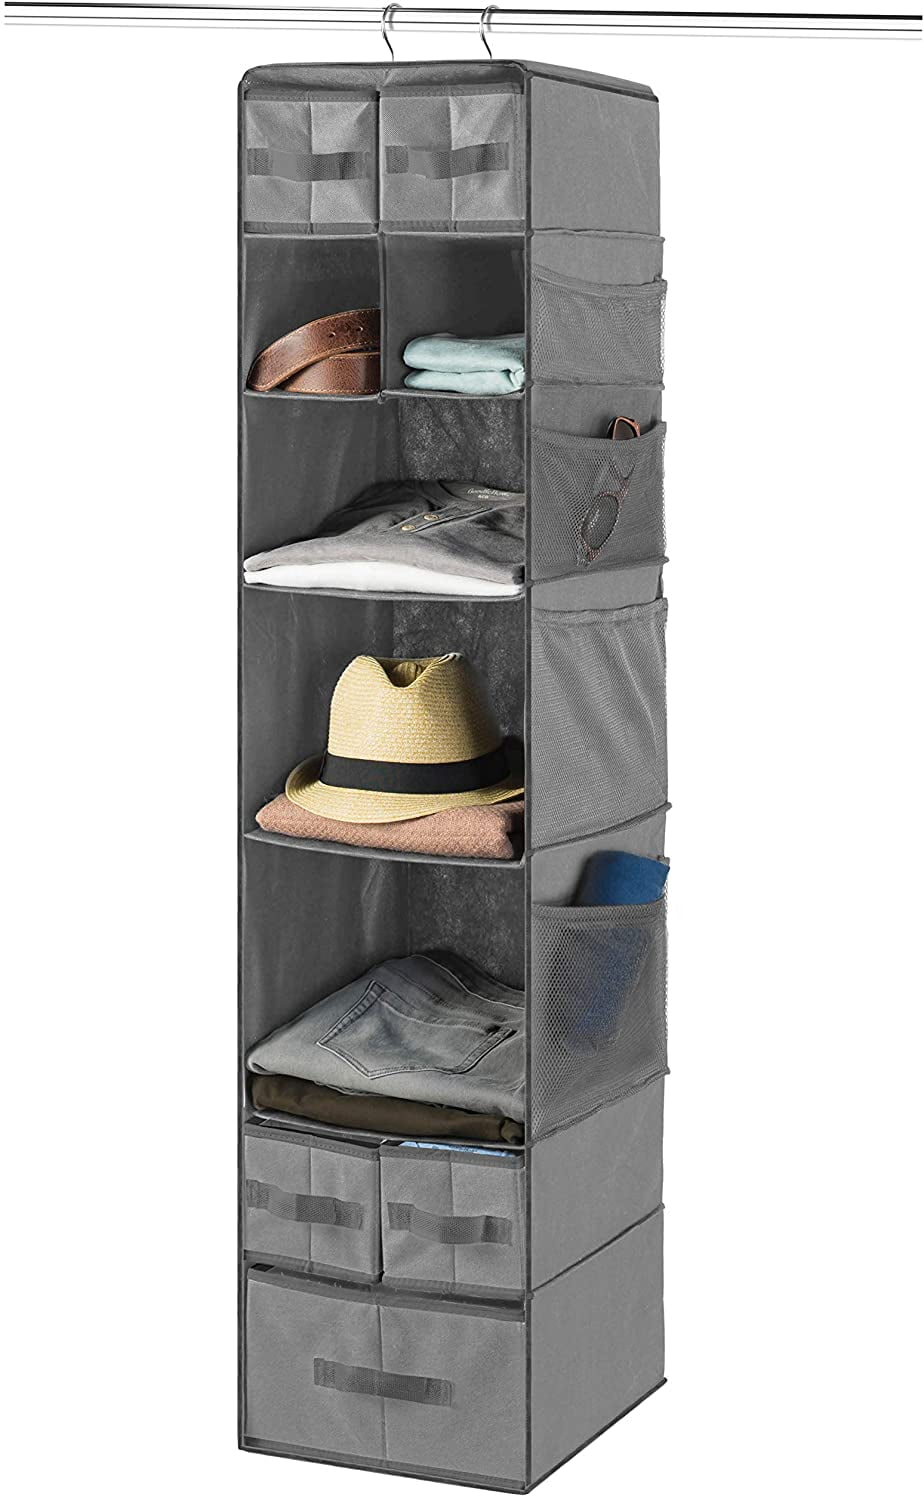 9 Shelf Hanging Closet Organizer With 5, Clothes Storage Bins For Shelves